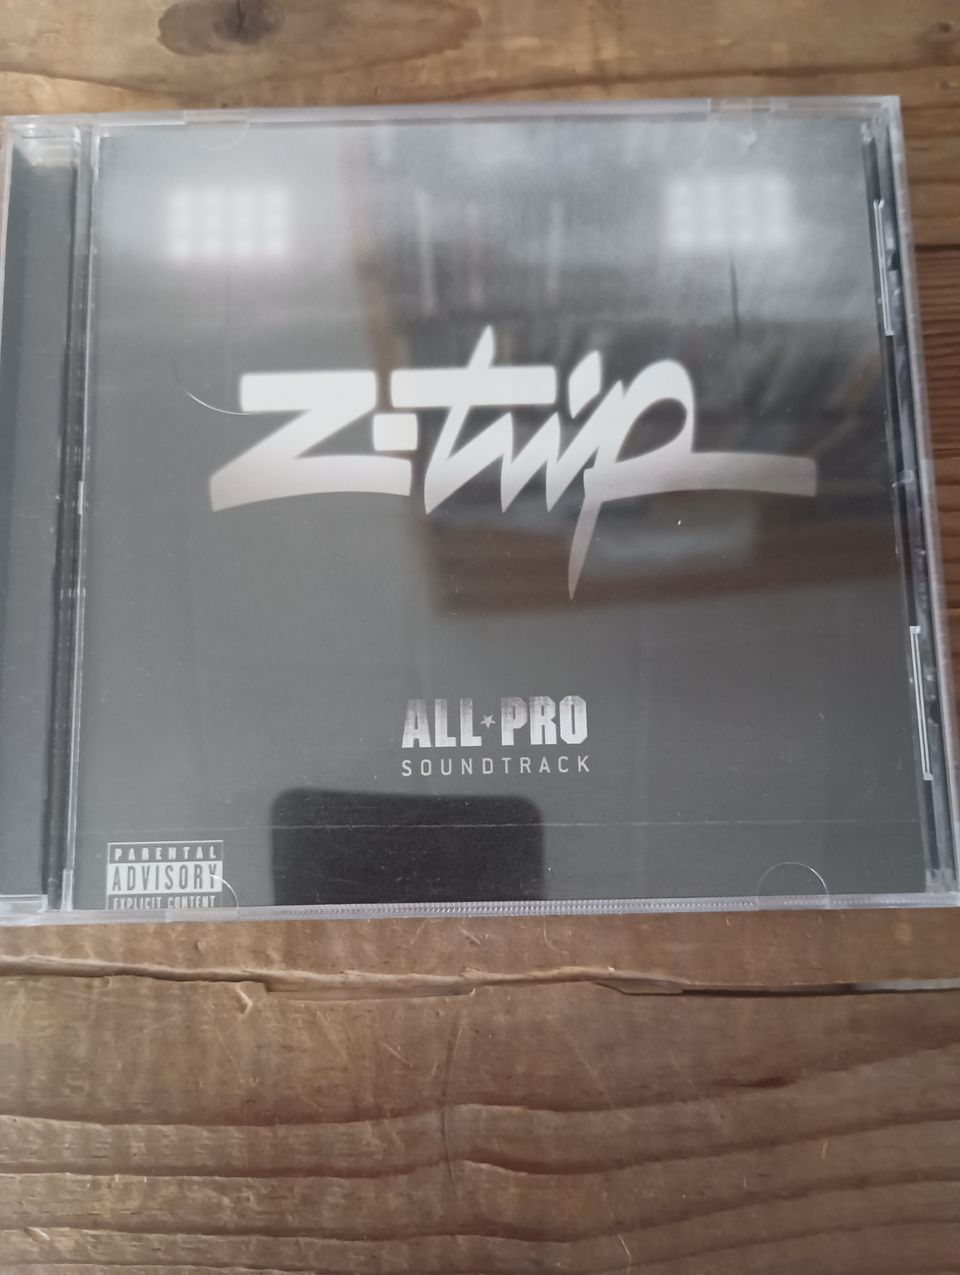 Z-Trip - All Pro Soundtrack CD